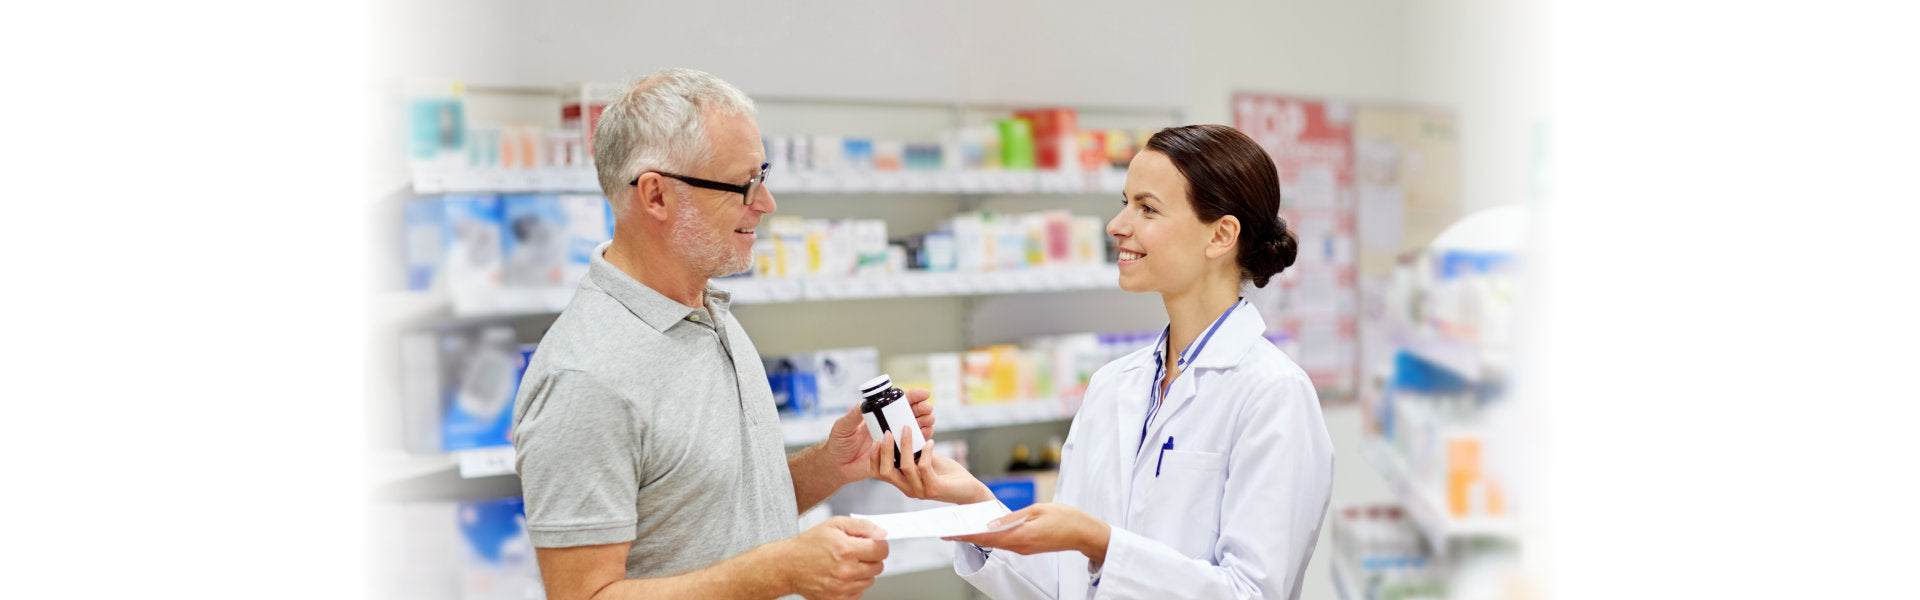 pharmacist giving senior man medication